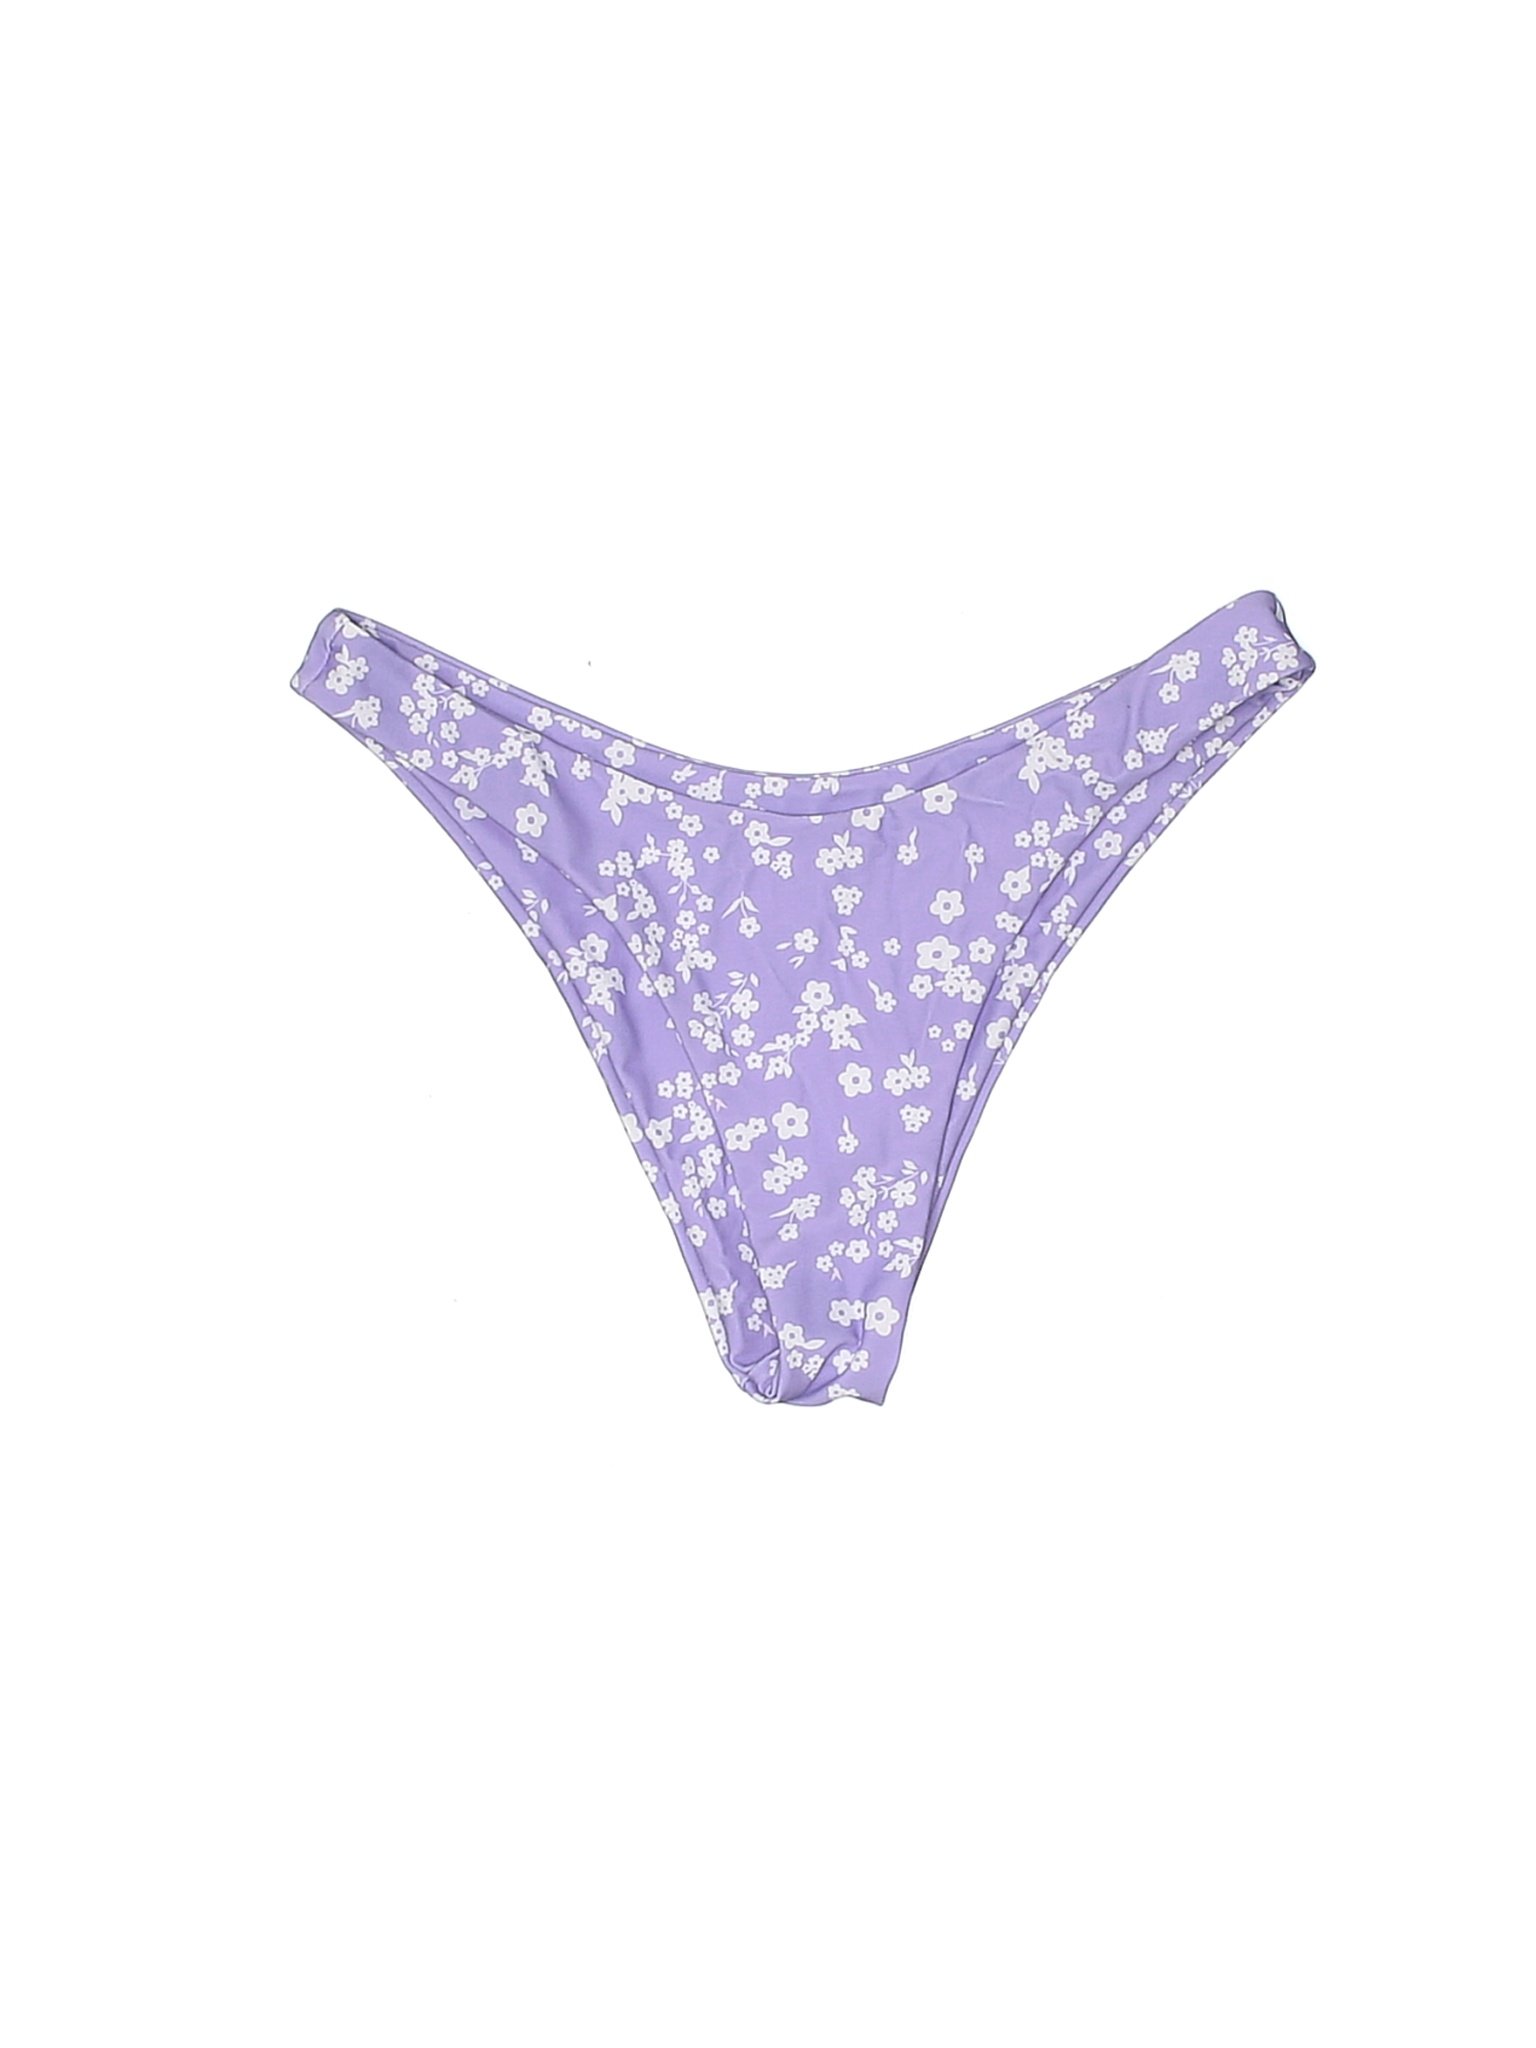 Shein Women Purple Swimsuit Bottoms S | eBay